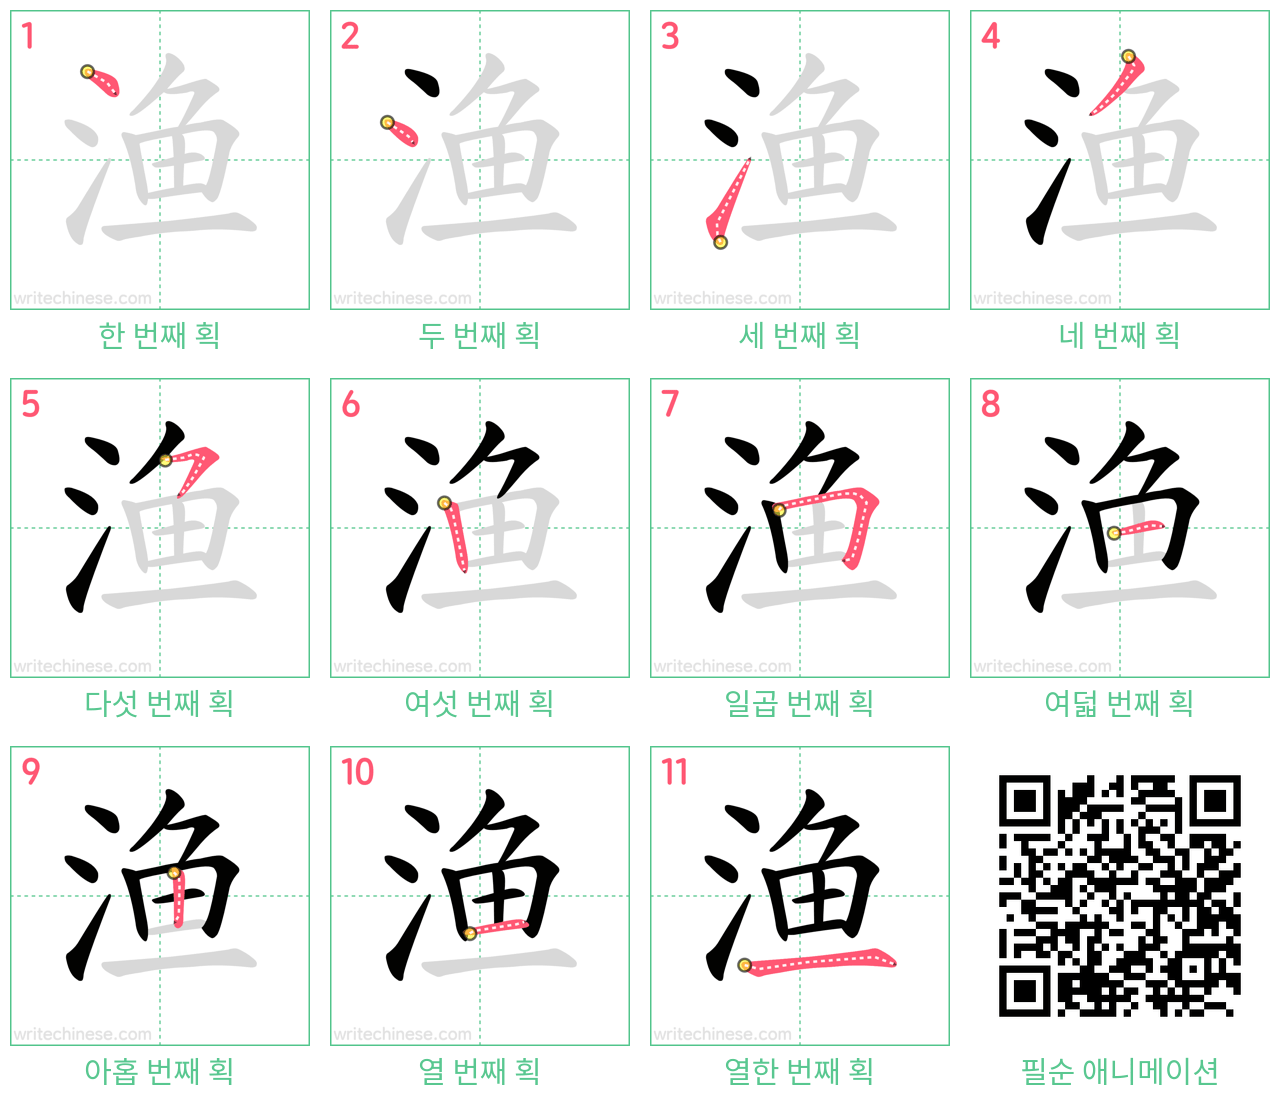 渔 step-by-step stroke order diagrams